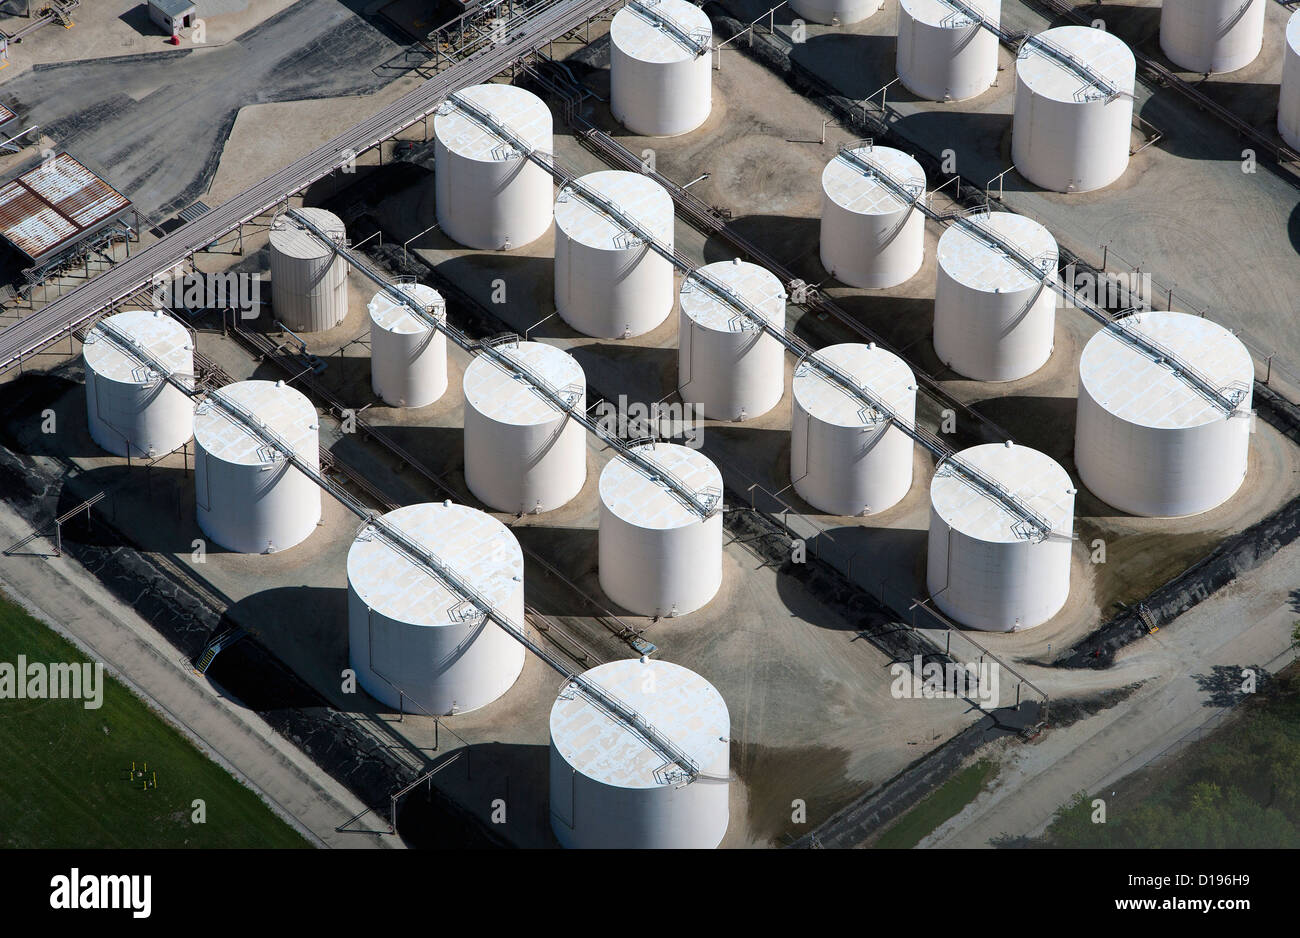 Photographie aérienne des réservoirs de stockage de la raffinerie d'Exxon Mobil, Joliet, Illinois Channahon Banque D'Images